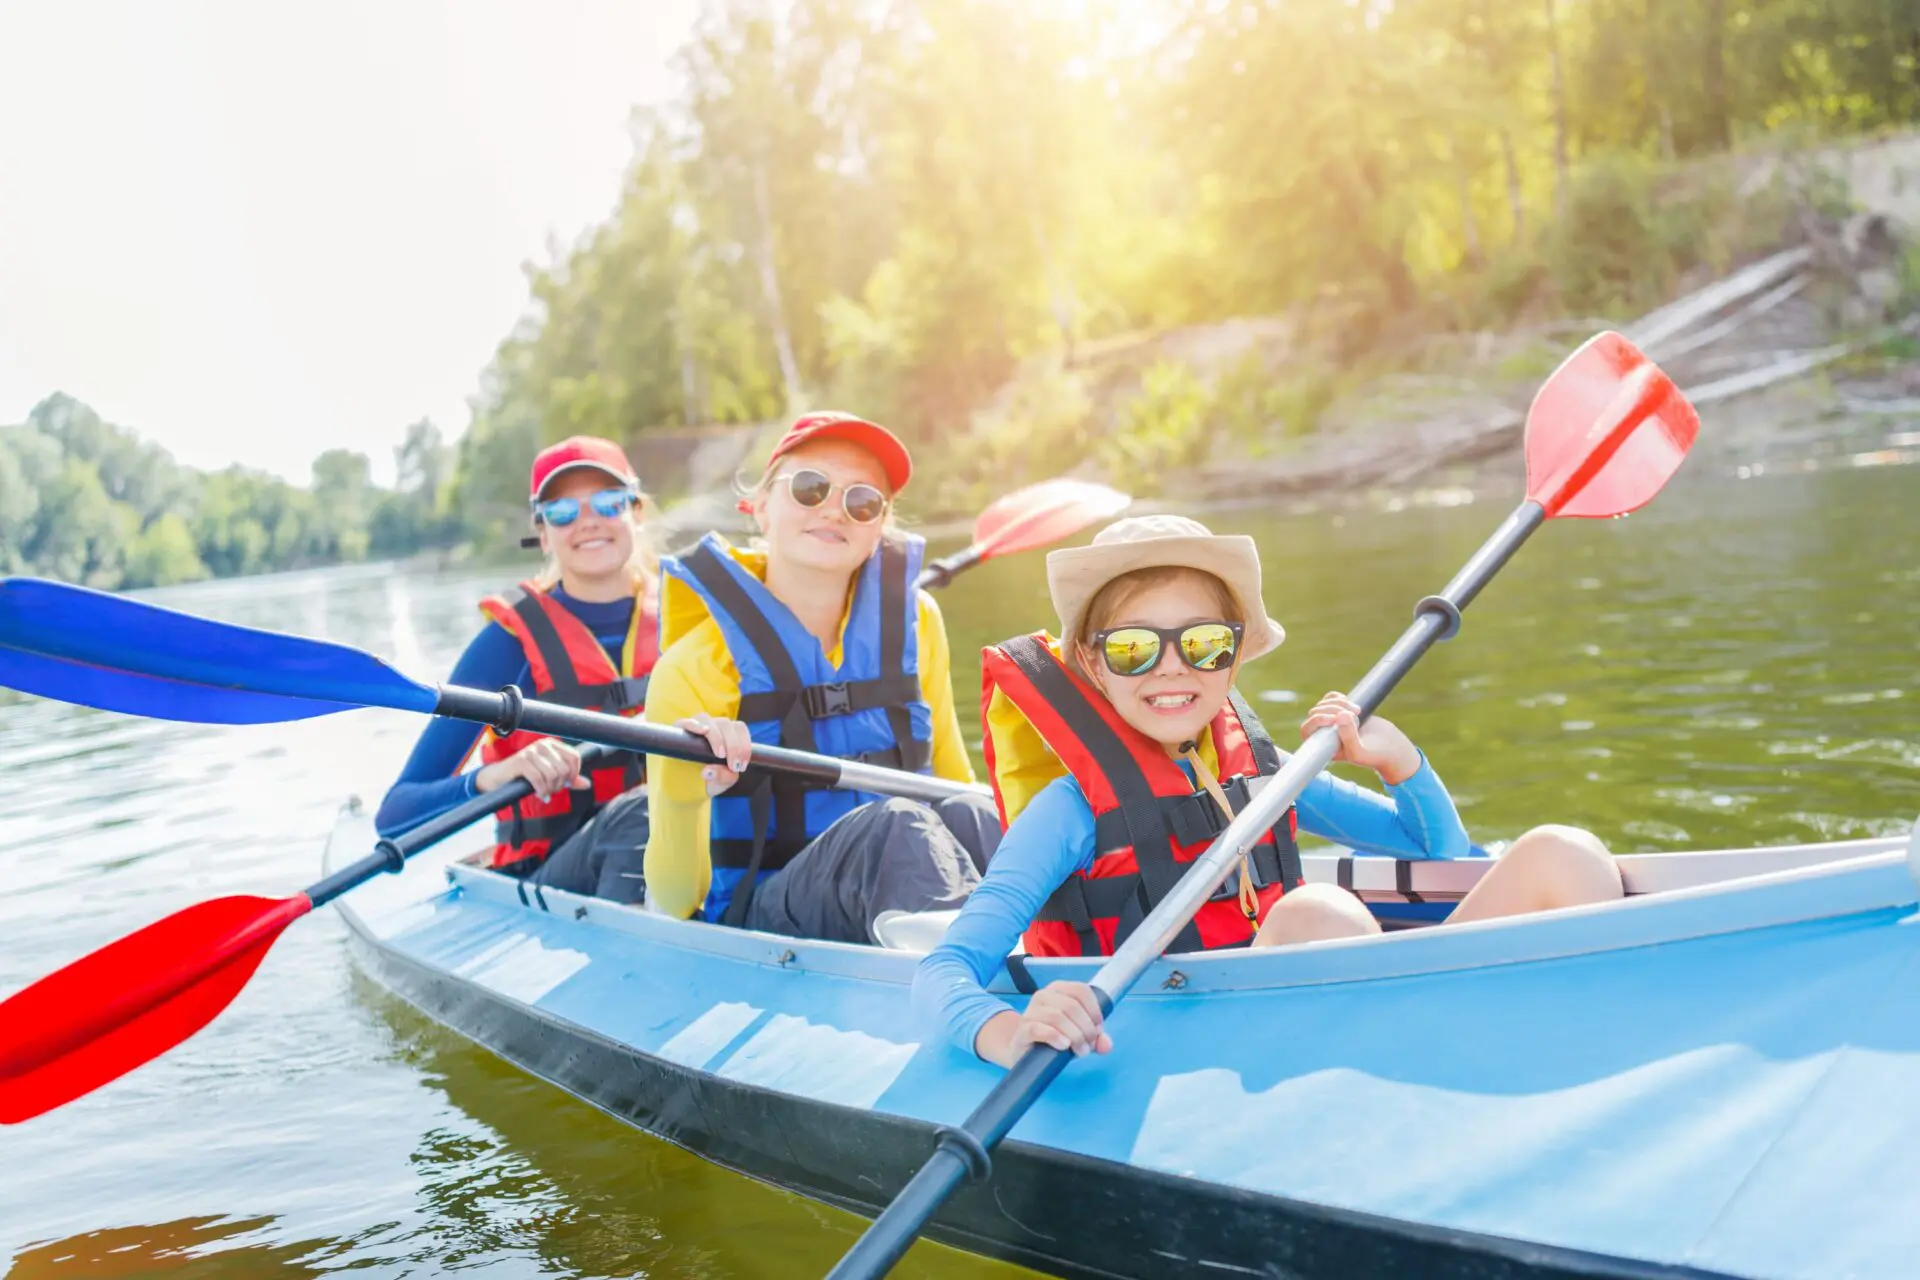 Séjour linguistique sport proposant plusieurs activités sportives tel que le canoë-kayak.